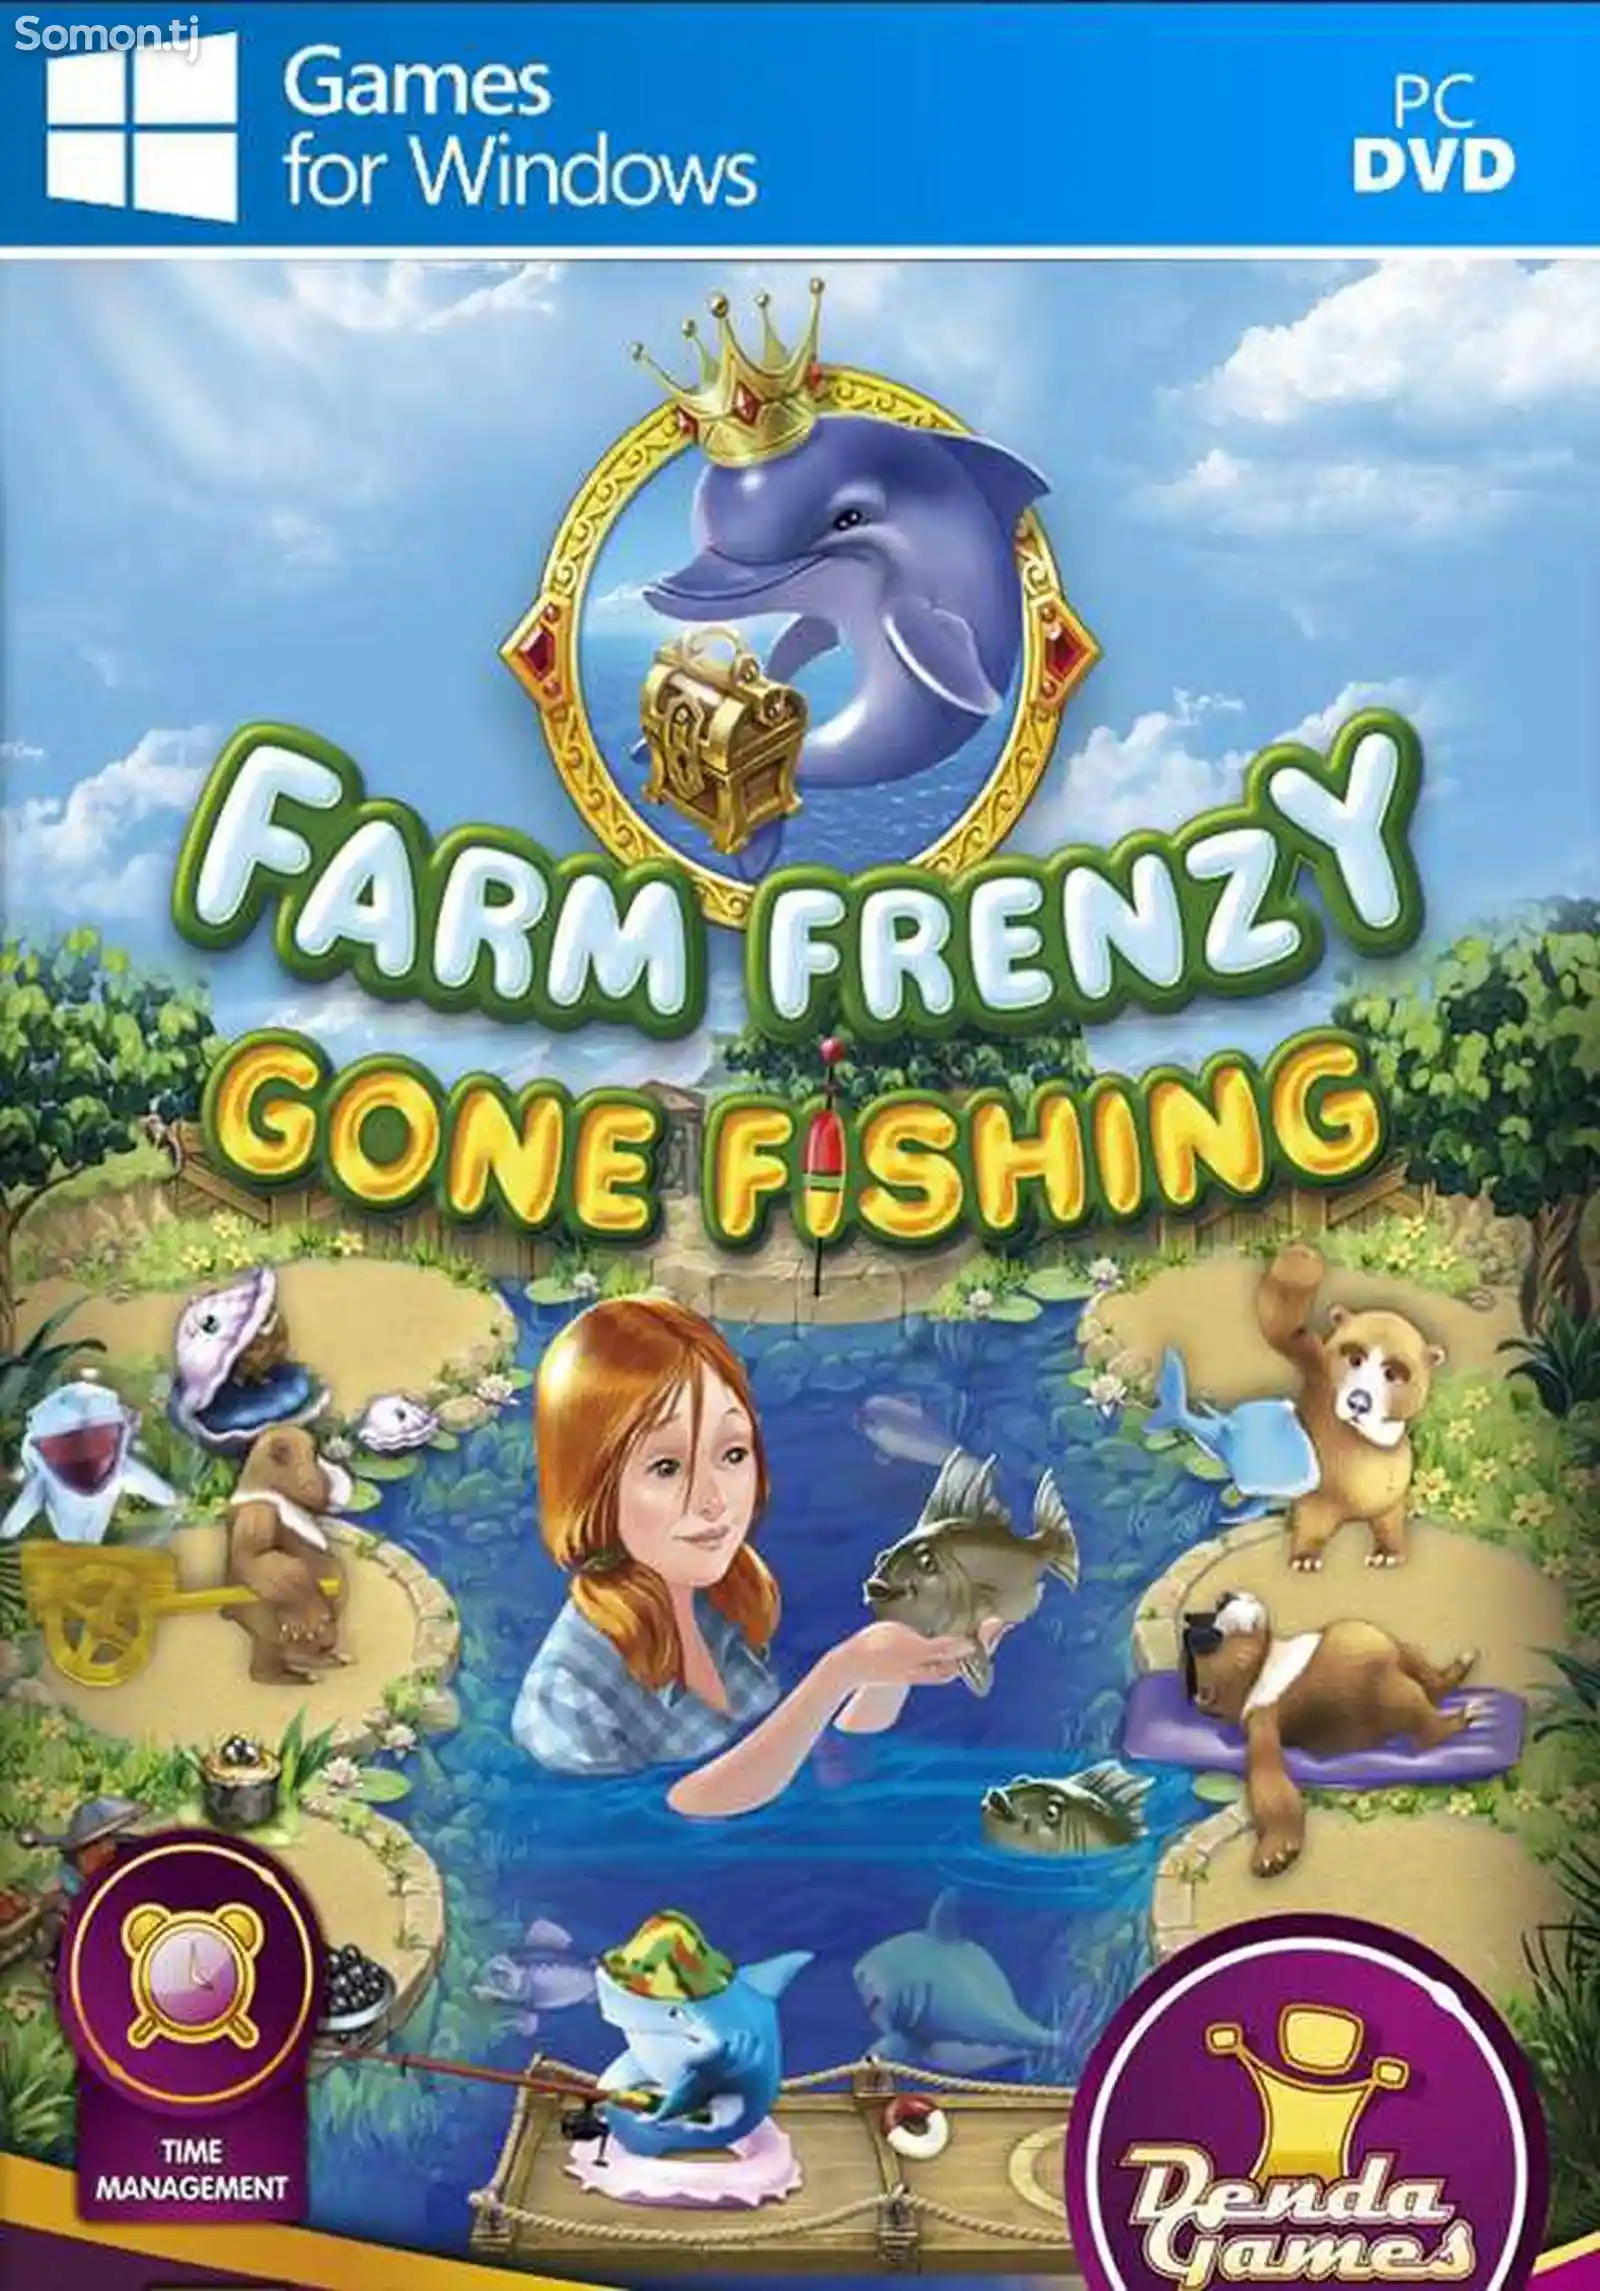 Игра Farm frenzy gone fishing для компьютера-пк-pc-1